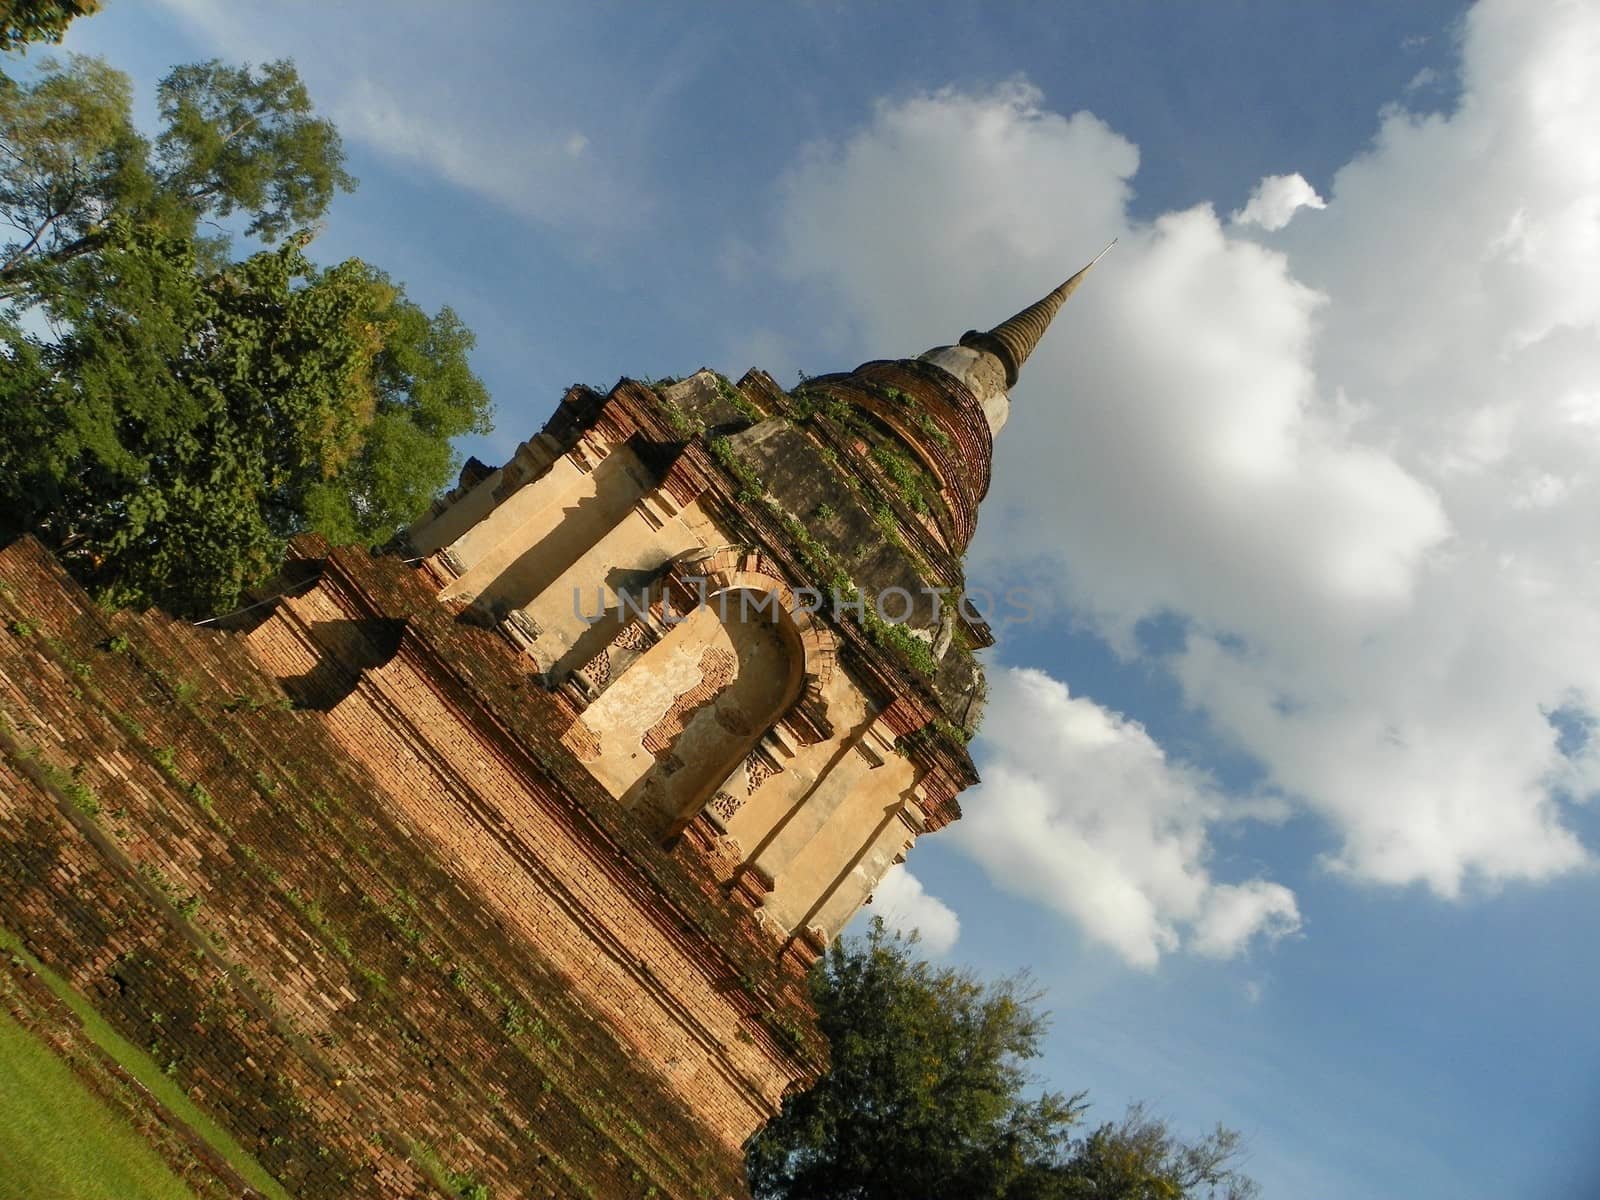 Pagoda in Wat chedyod temple,Chiangmai